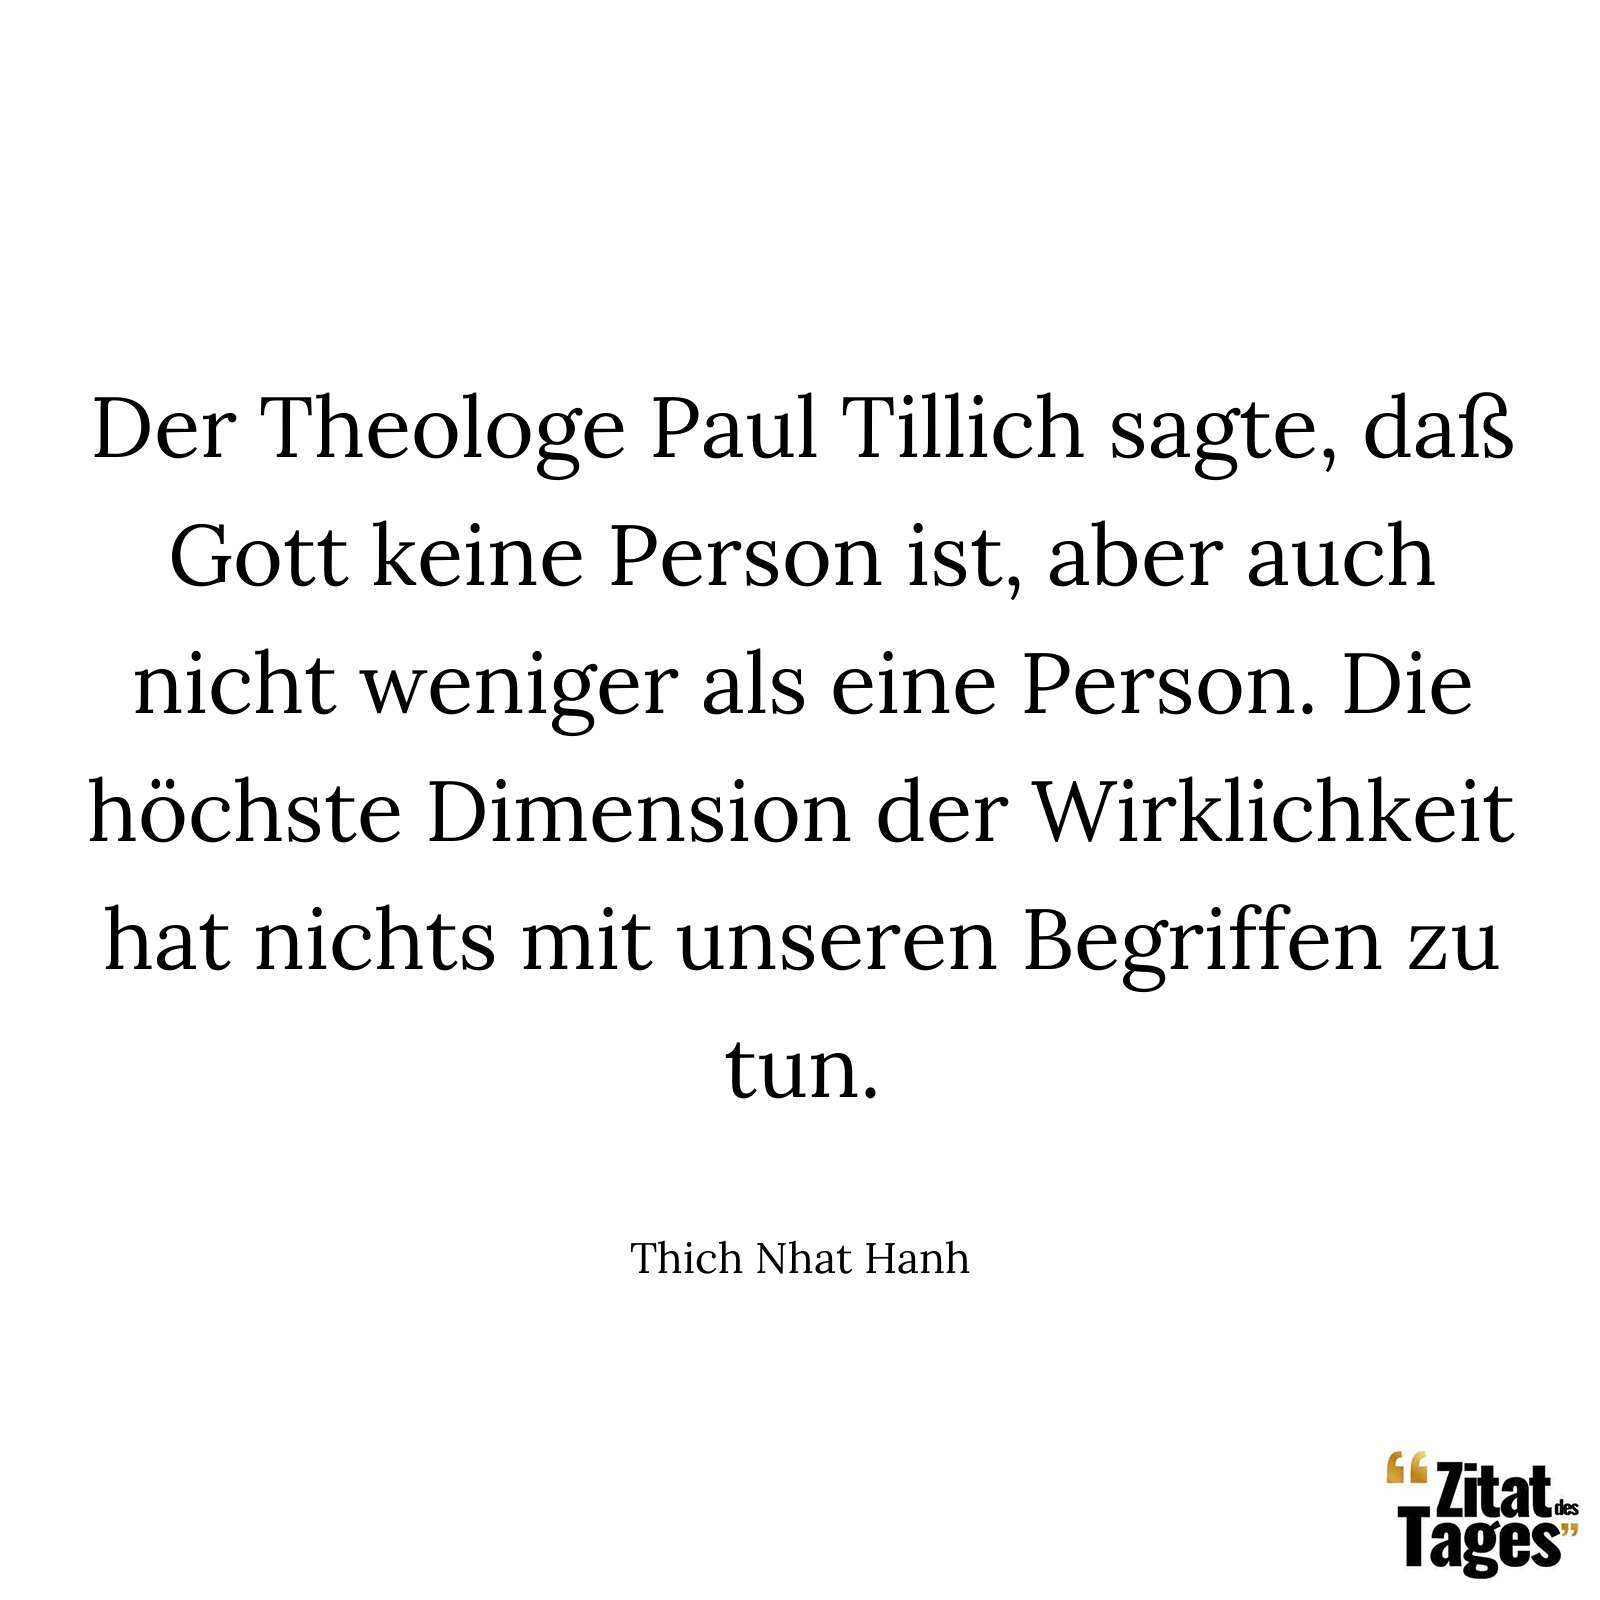 Der Theologe Paul Tillich sagte, daß Gott keine Person ist, aber auch nicht weniger als eine Person. Die höchste Dimension der Wirklichkeit hat nichts mit unseren Begriffen zu tun. - Thich Nhat Hanh